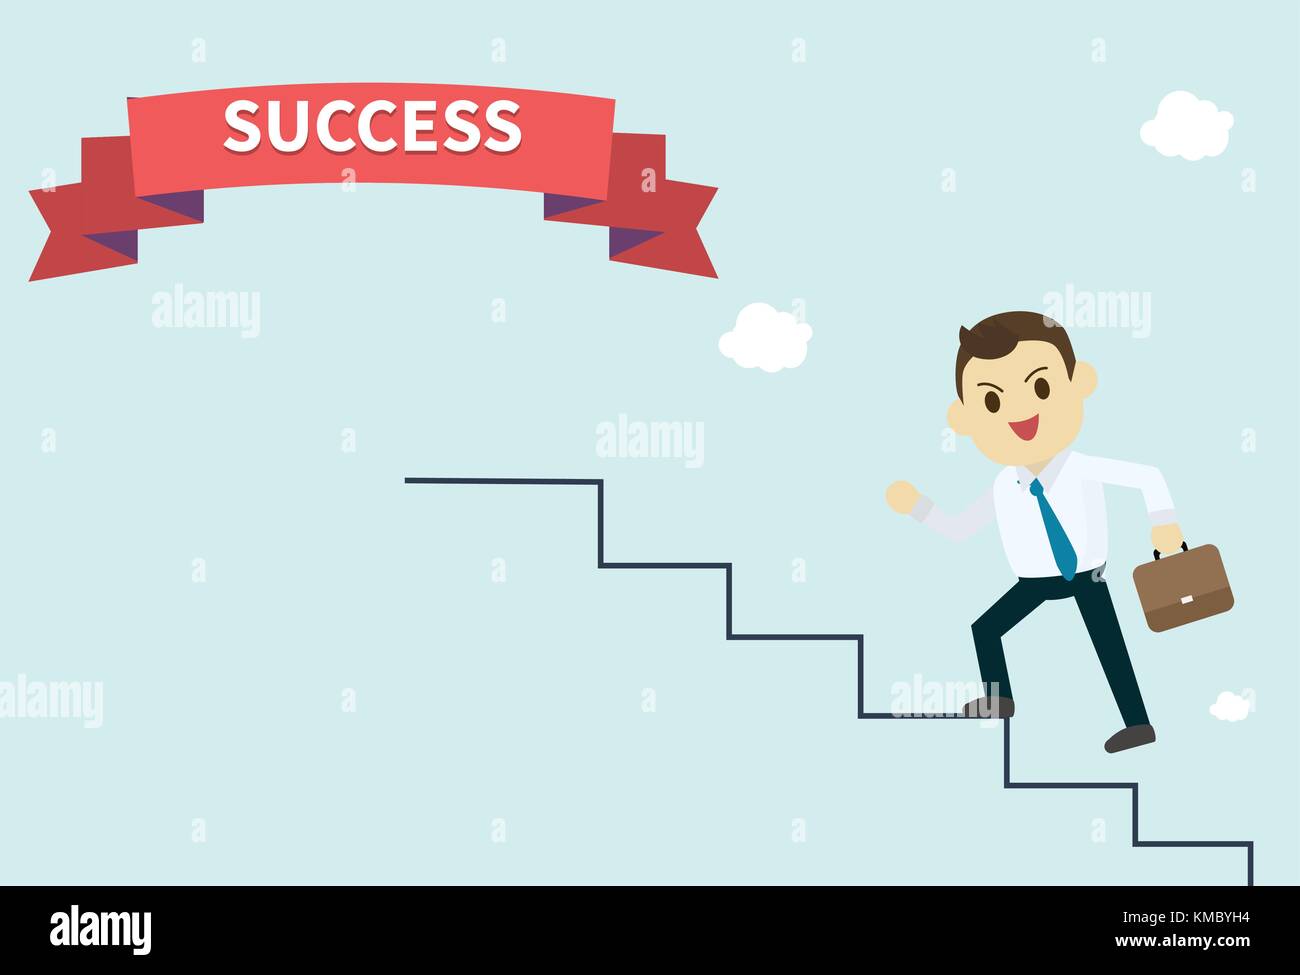 Unternehmer trägt ein weißes Hemd und er laufen die Treppen hoch zum Erfolg red ribbon Mitarbeiter klettert die Treppe Vektor-illustration, Business Konzept Wachstum Stock Vektor